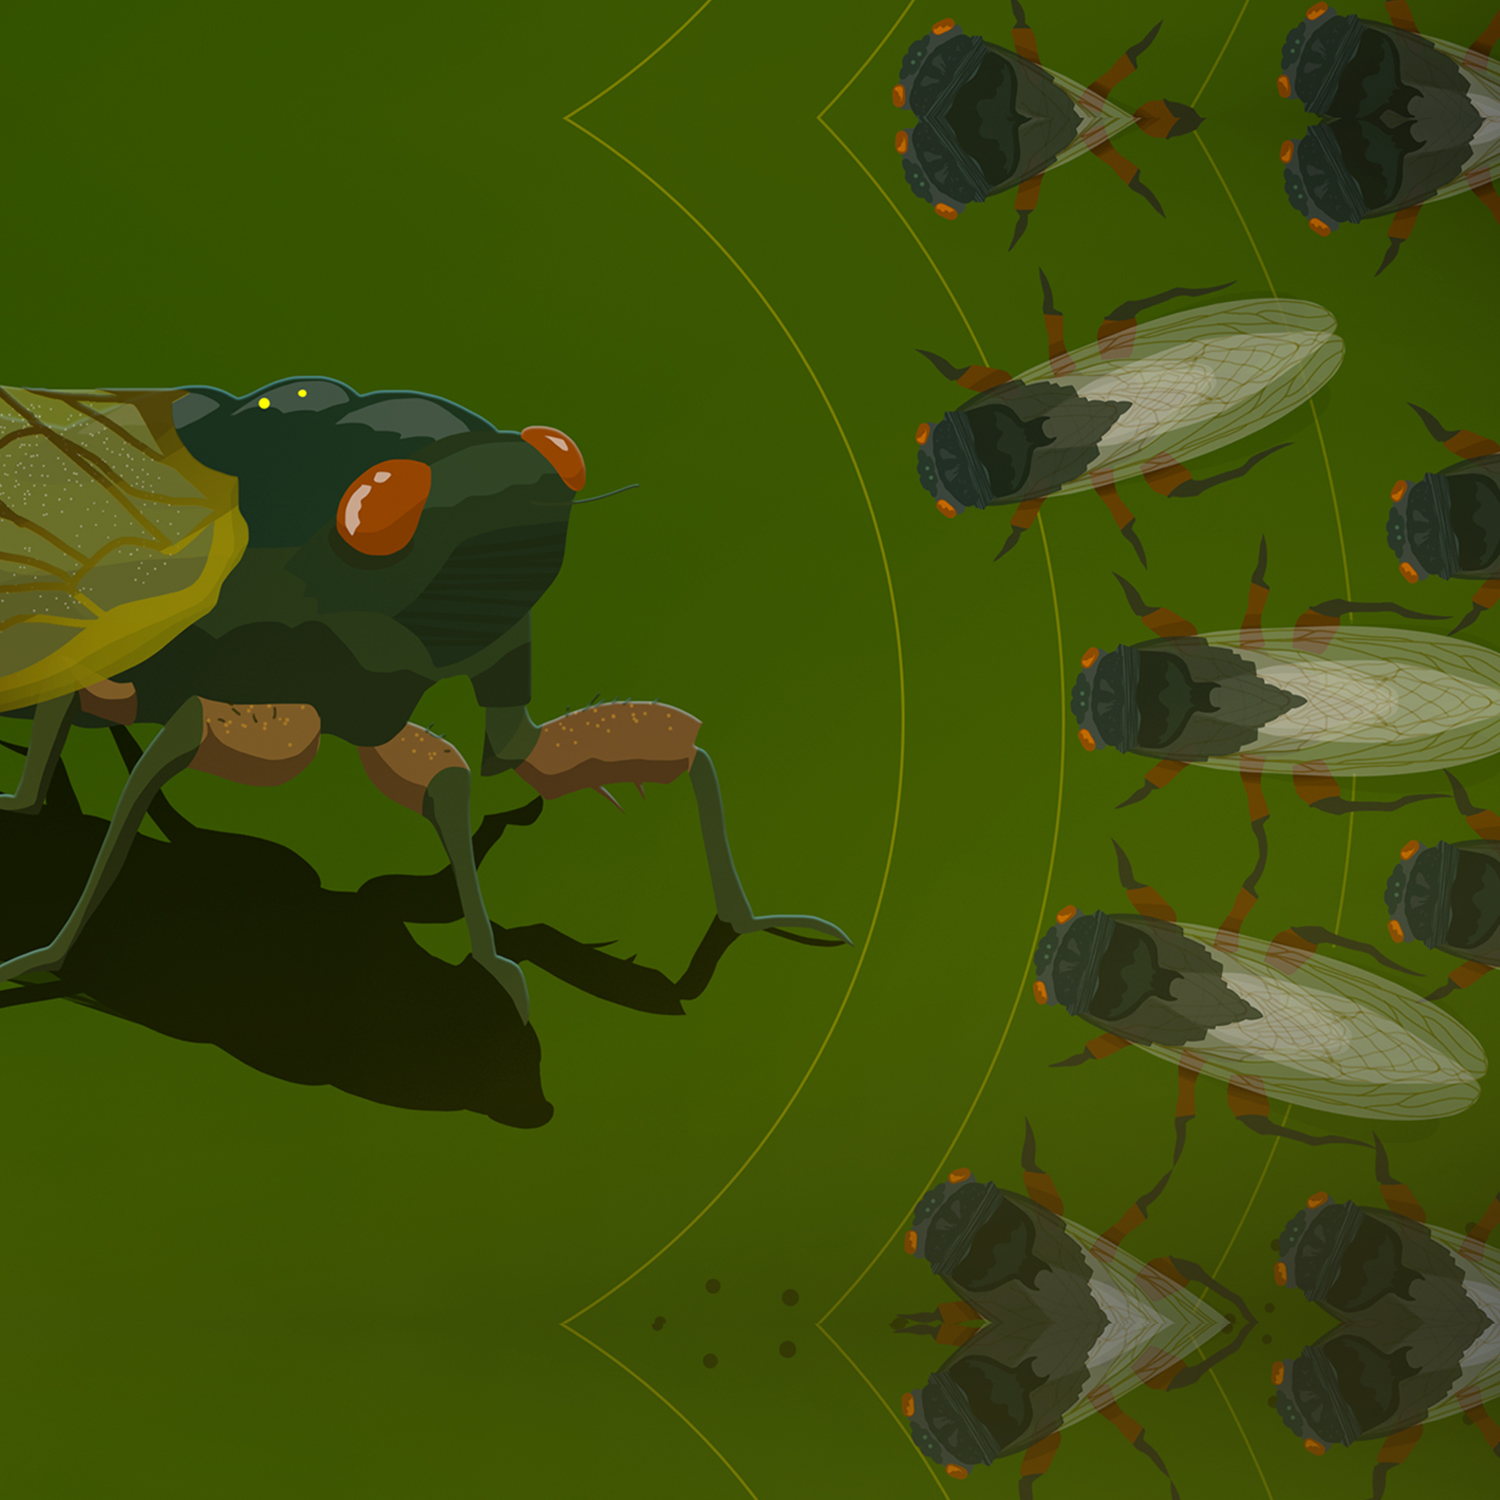 Cicadapalooza